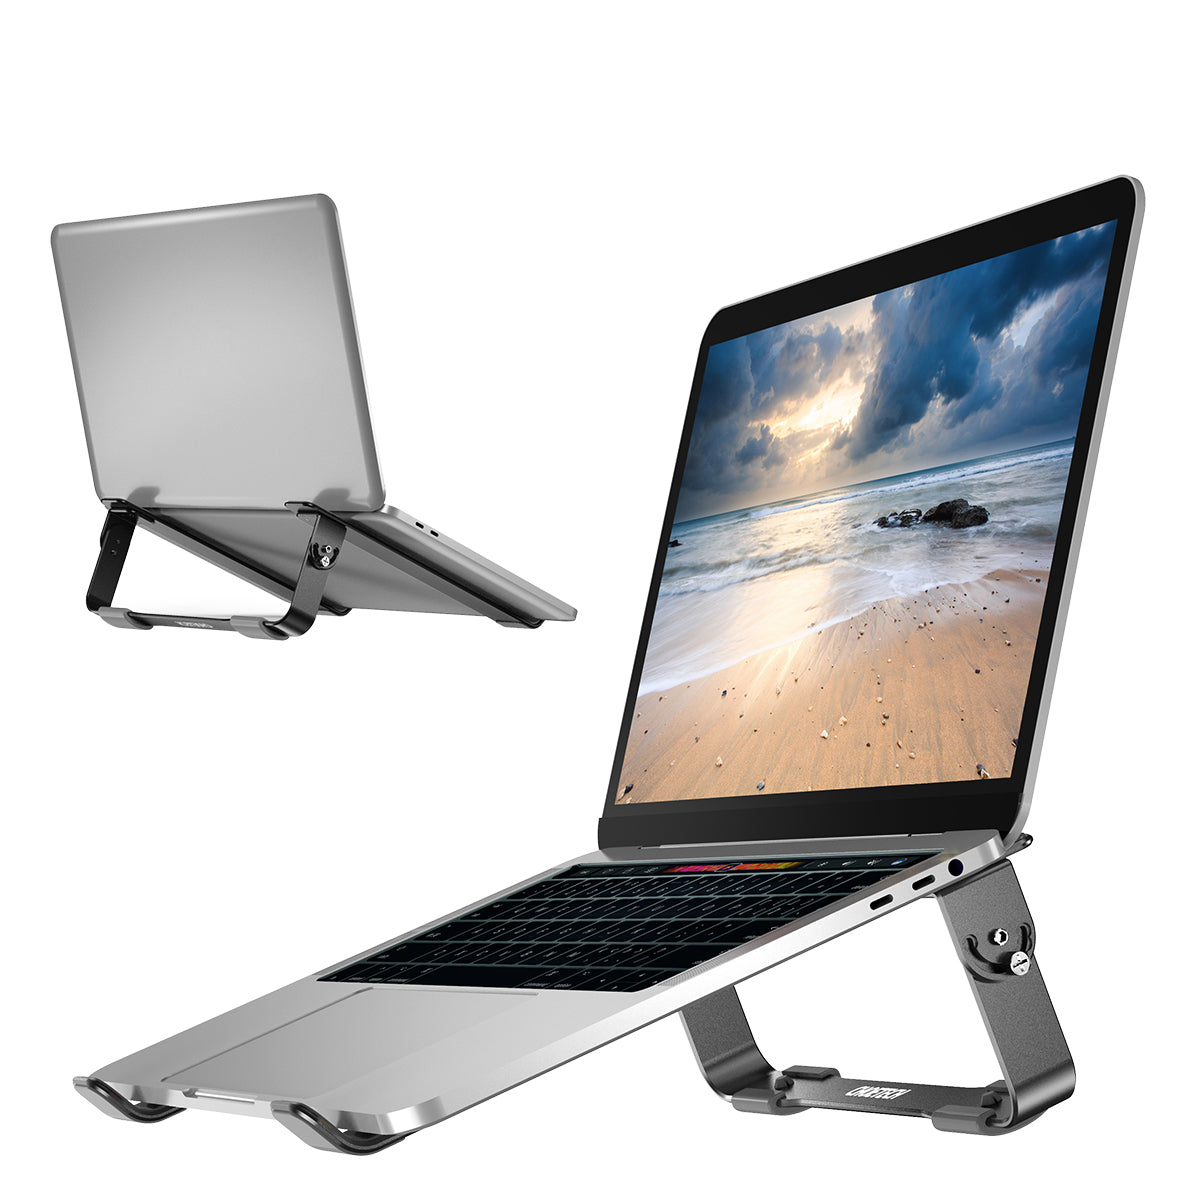 H033 support de refroidissement amovible en aluminium pour ordinateur portable